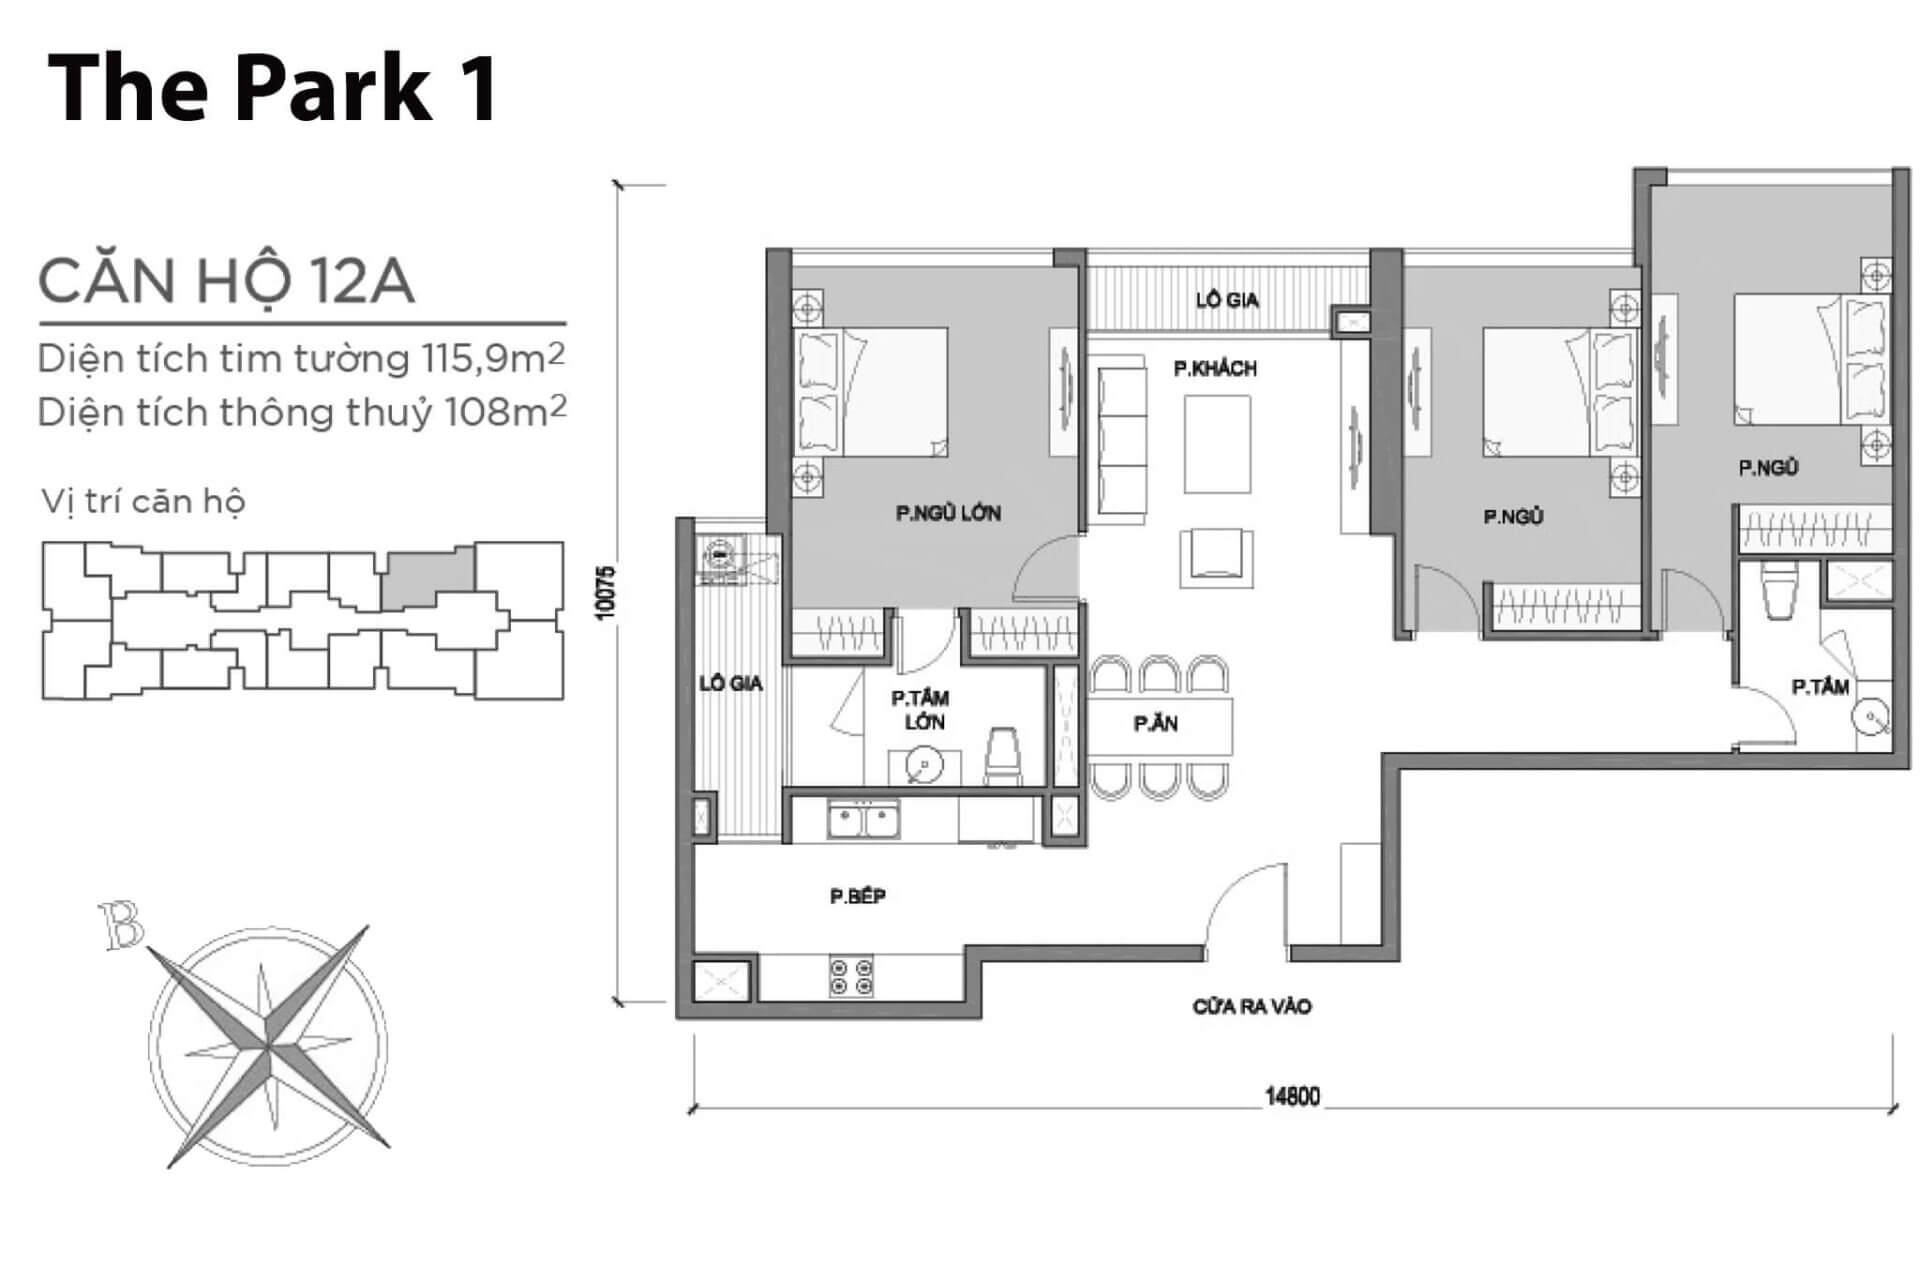 mặt bằng layout căn hộ số 12A Park 1 Vinhomes Central Park